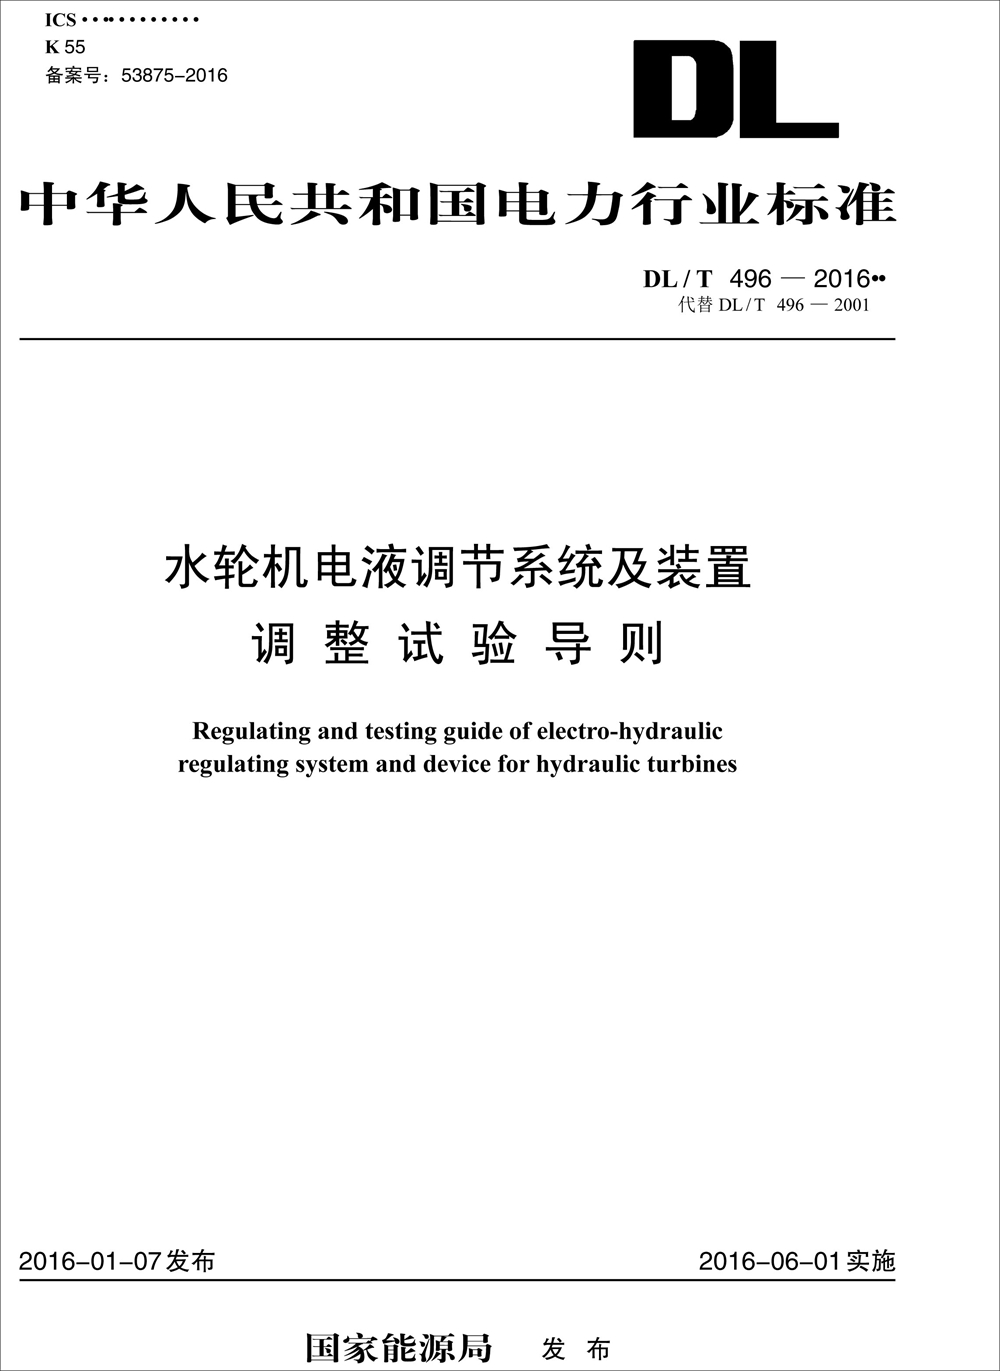 中华人民共和国电力行业标准（DL/T 496-2016）：水轮机电液调节系统及装置调整试验导则 word格式下载